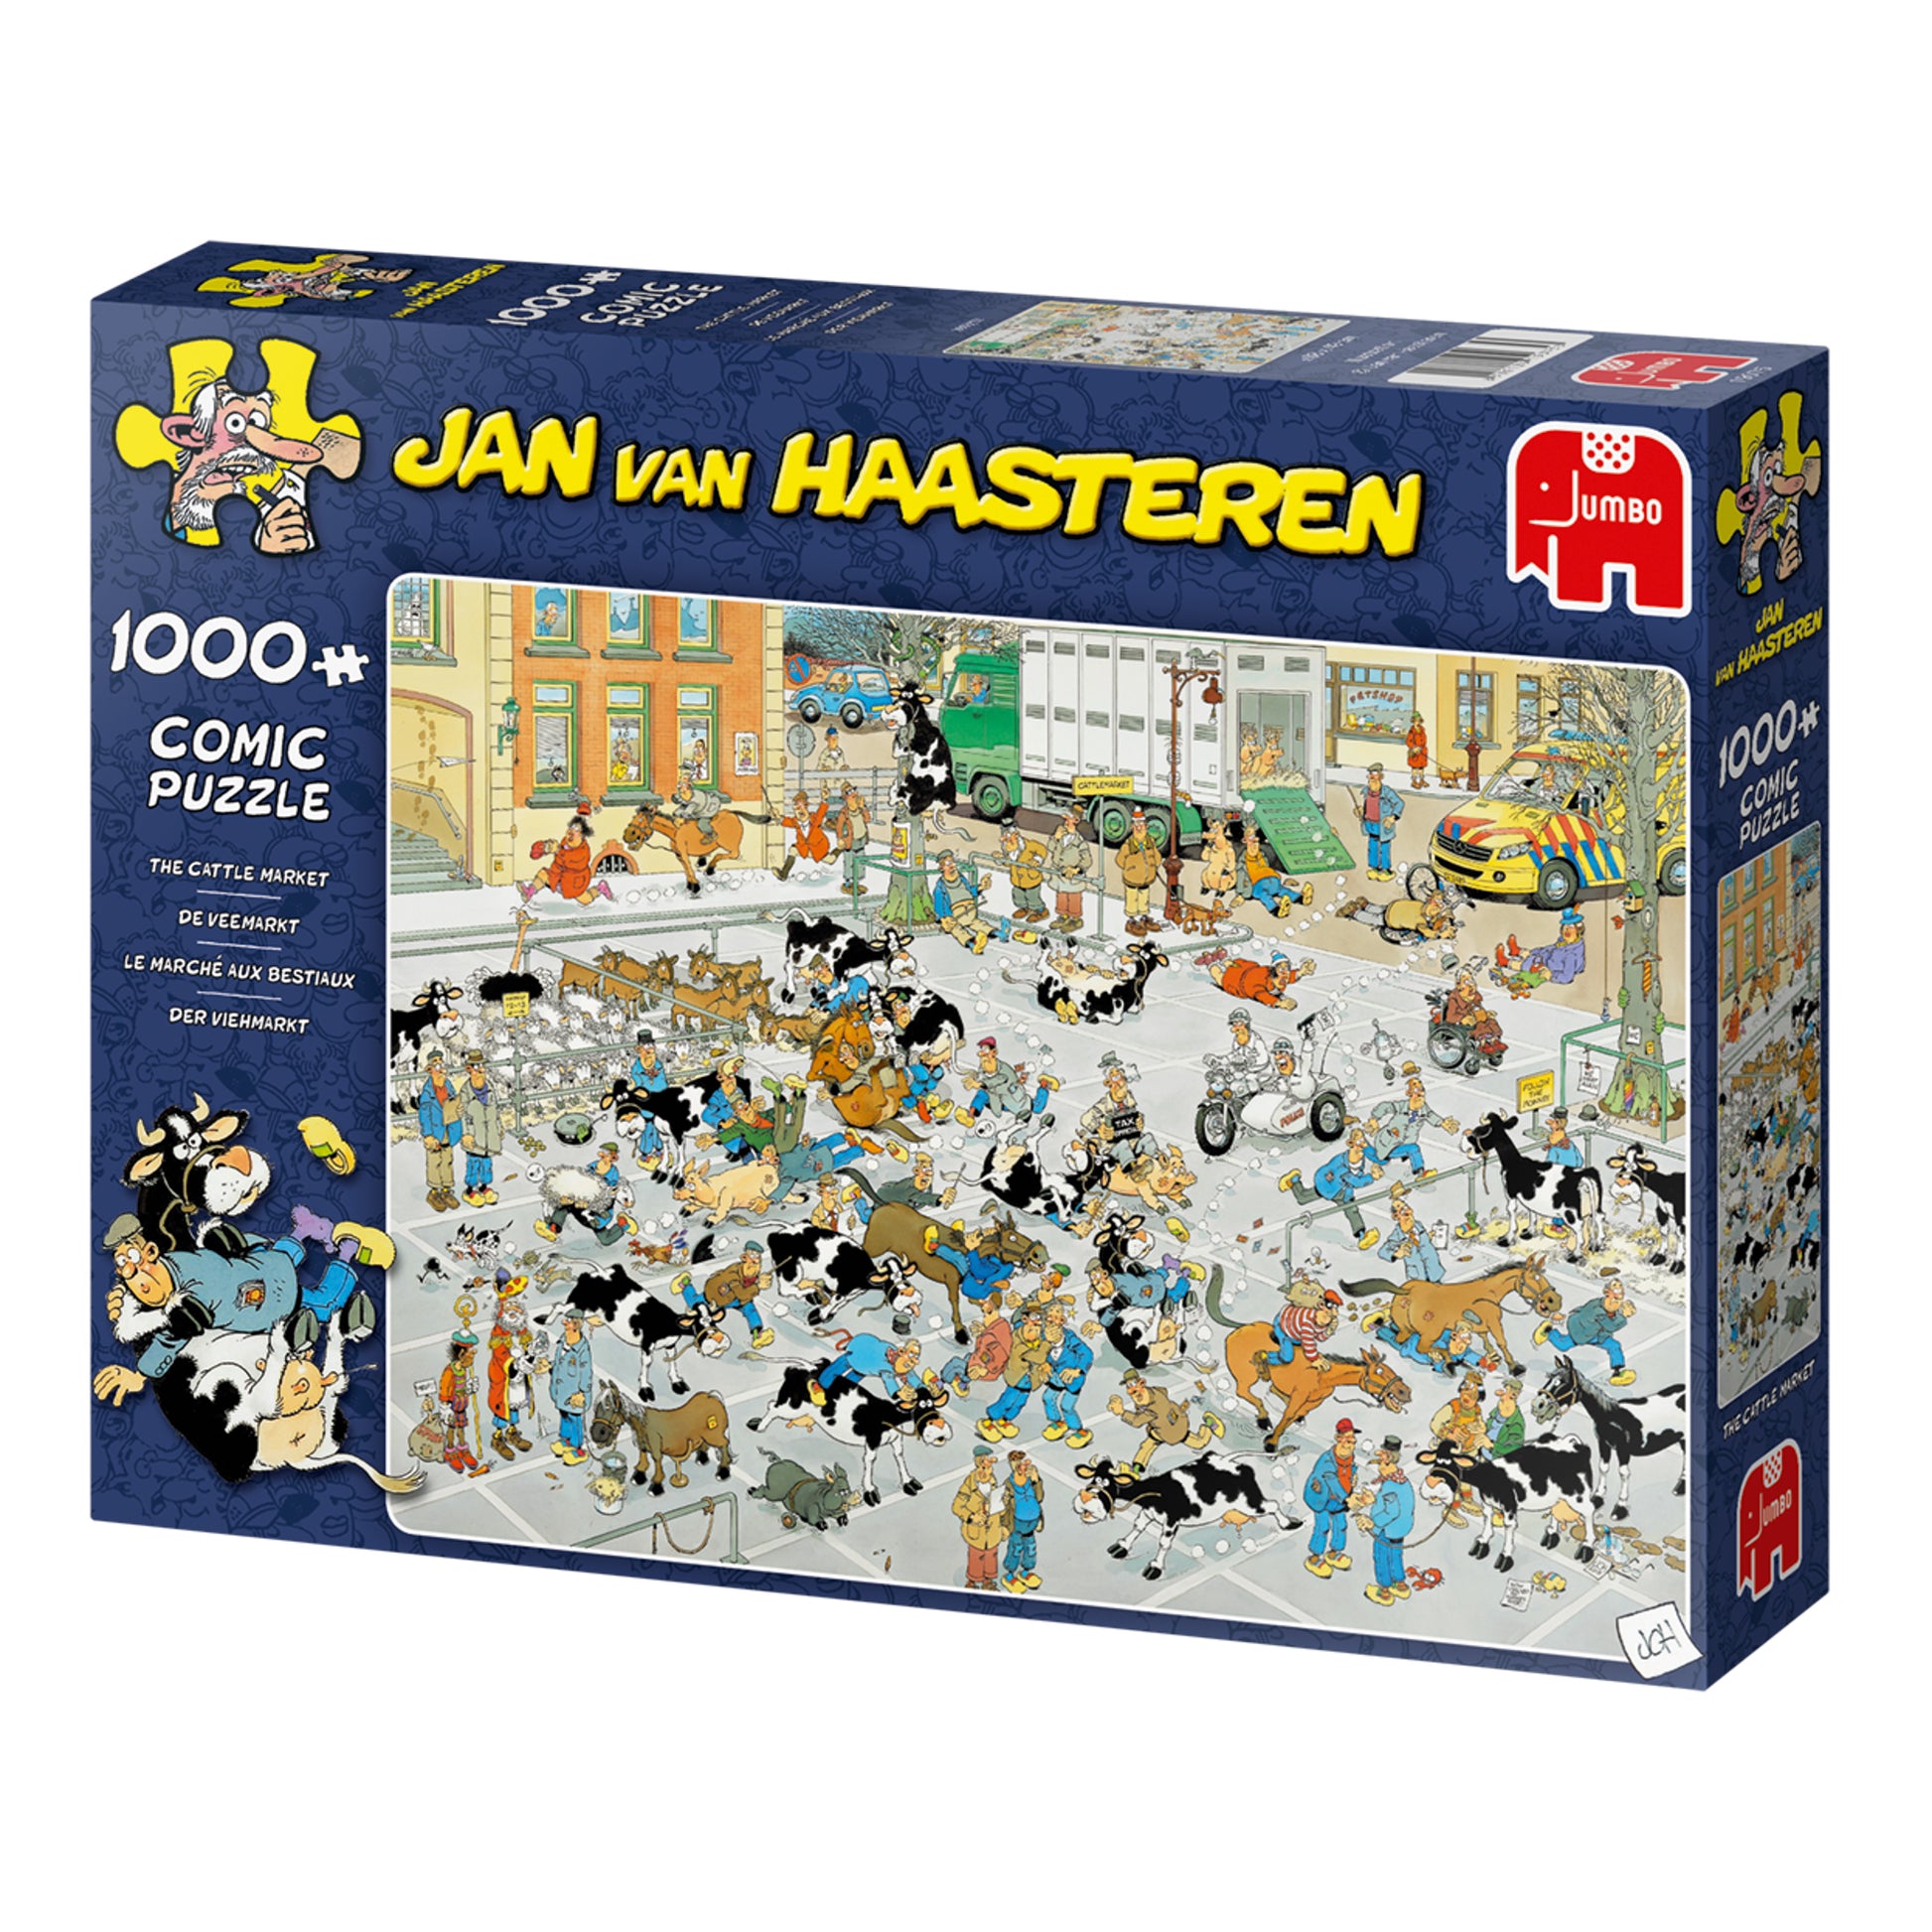 Jan van Haasteren - The Cattle Market (1000 pieces) - product image - Jumboplay.com